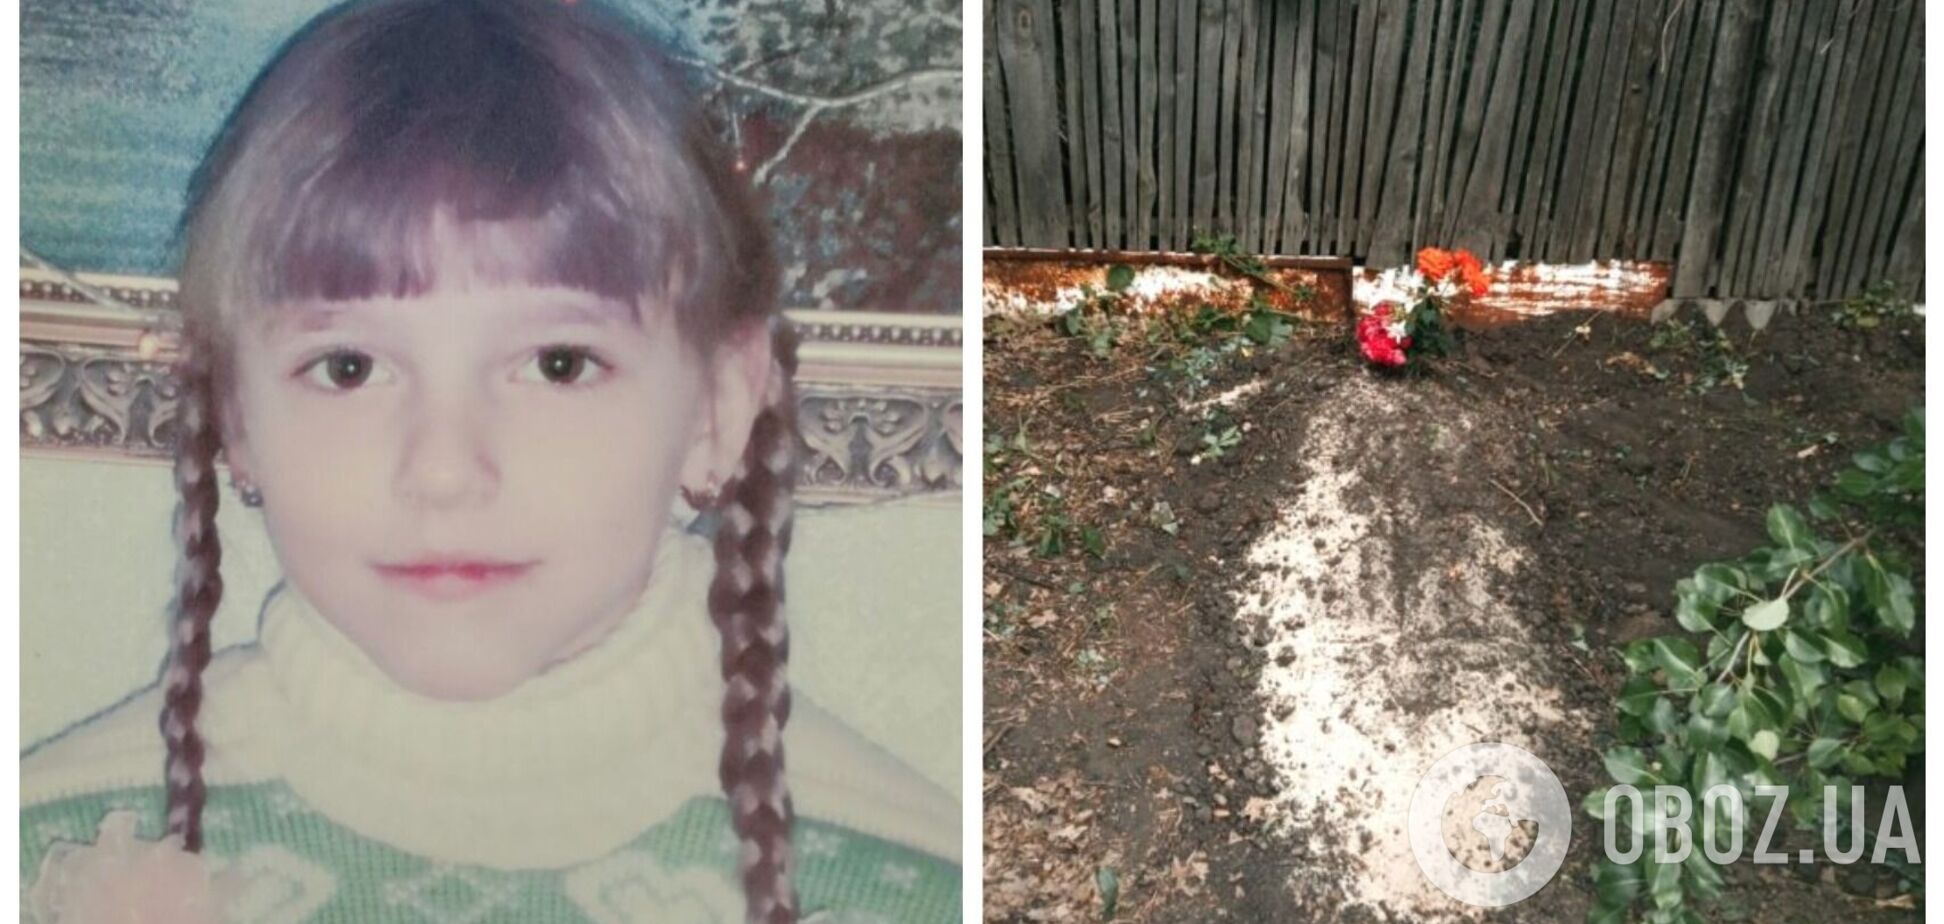 13-летнюю девочку-волонтера убил снаряд: в сети рассказали трагическую историю из Лисичанска. Фото